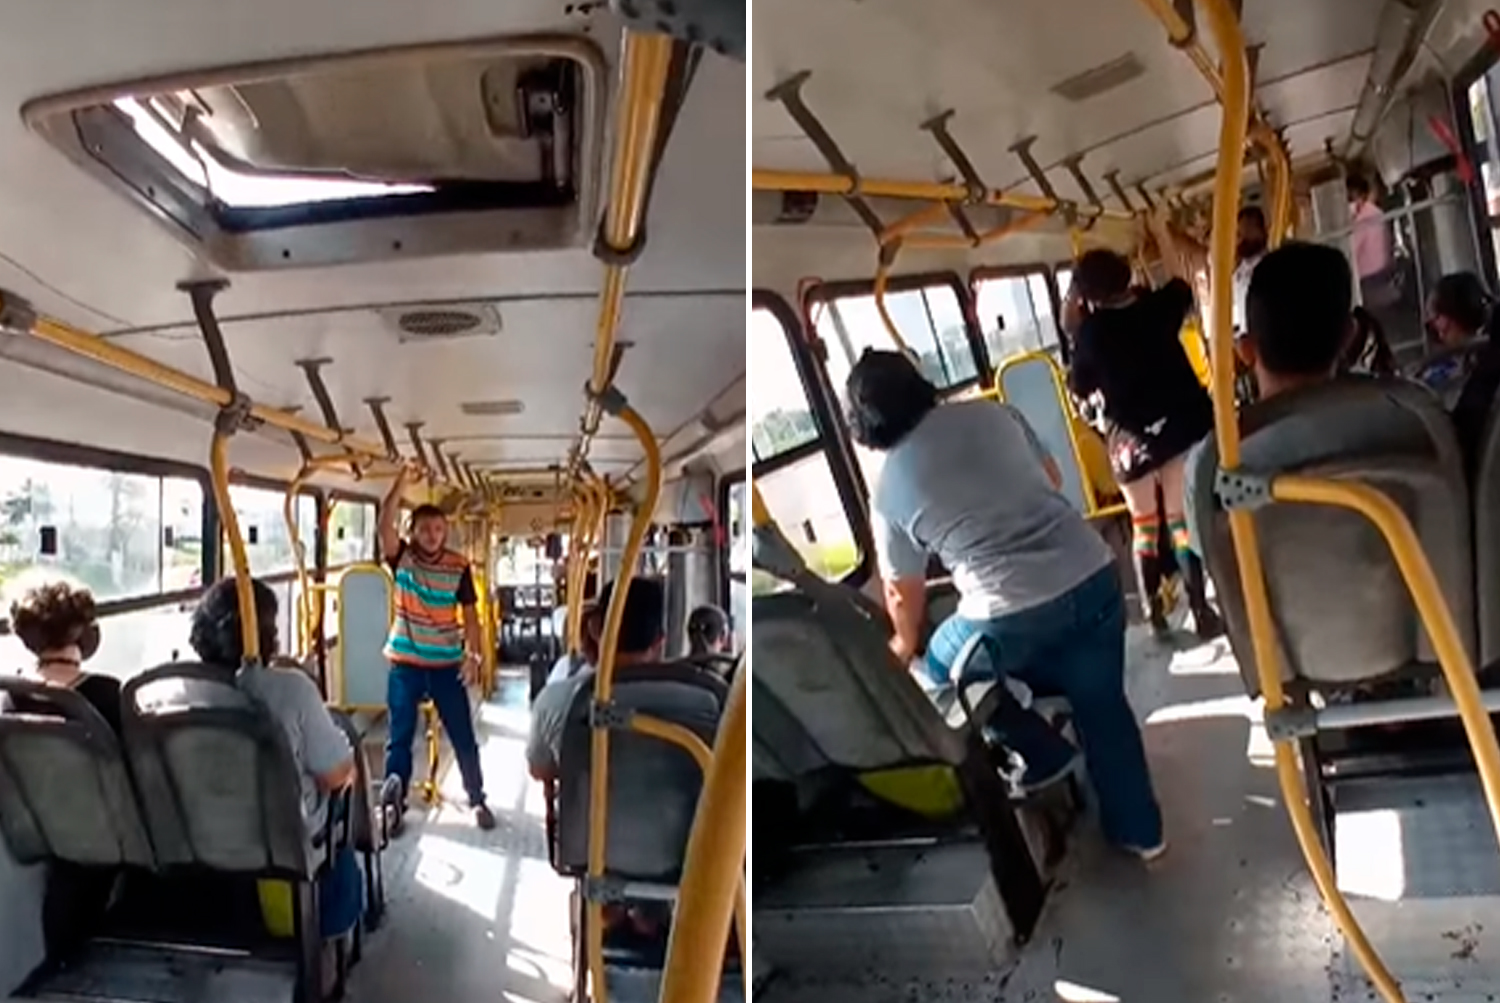 Pregador sendo agredido no ônibus